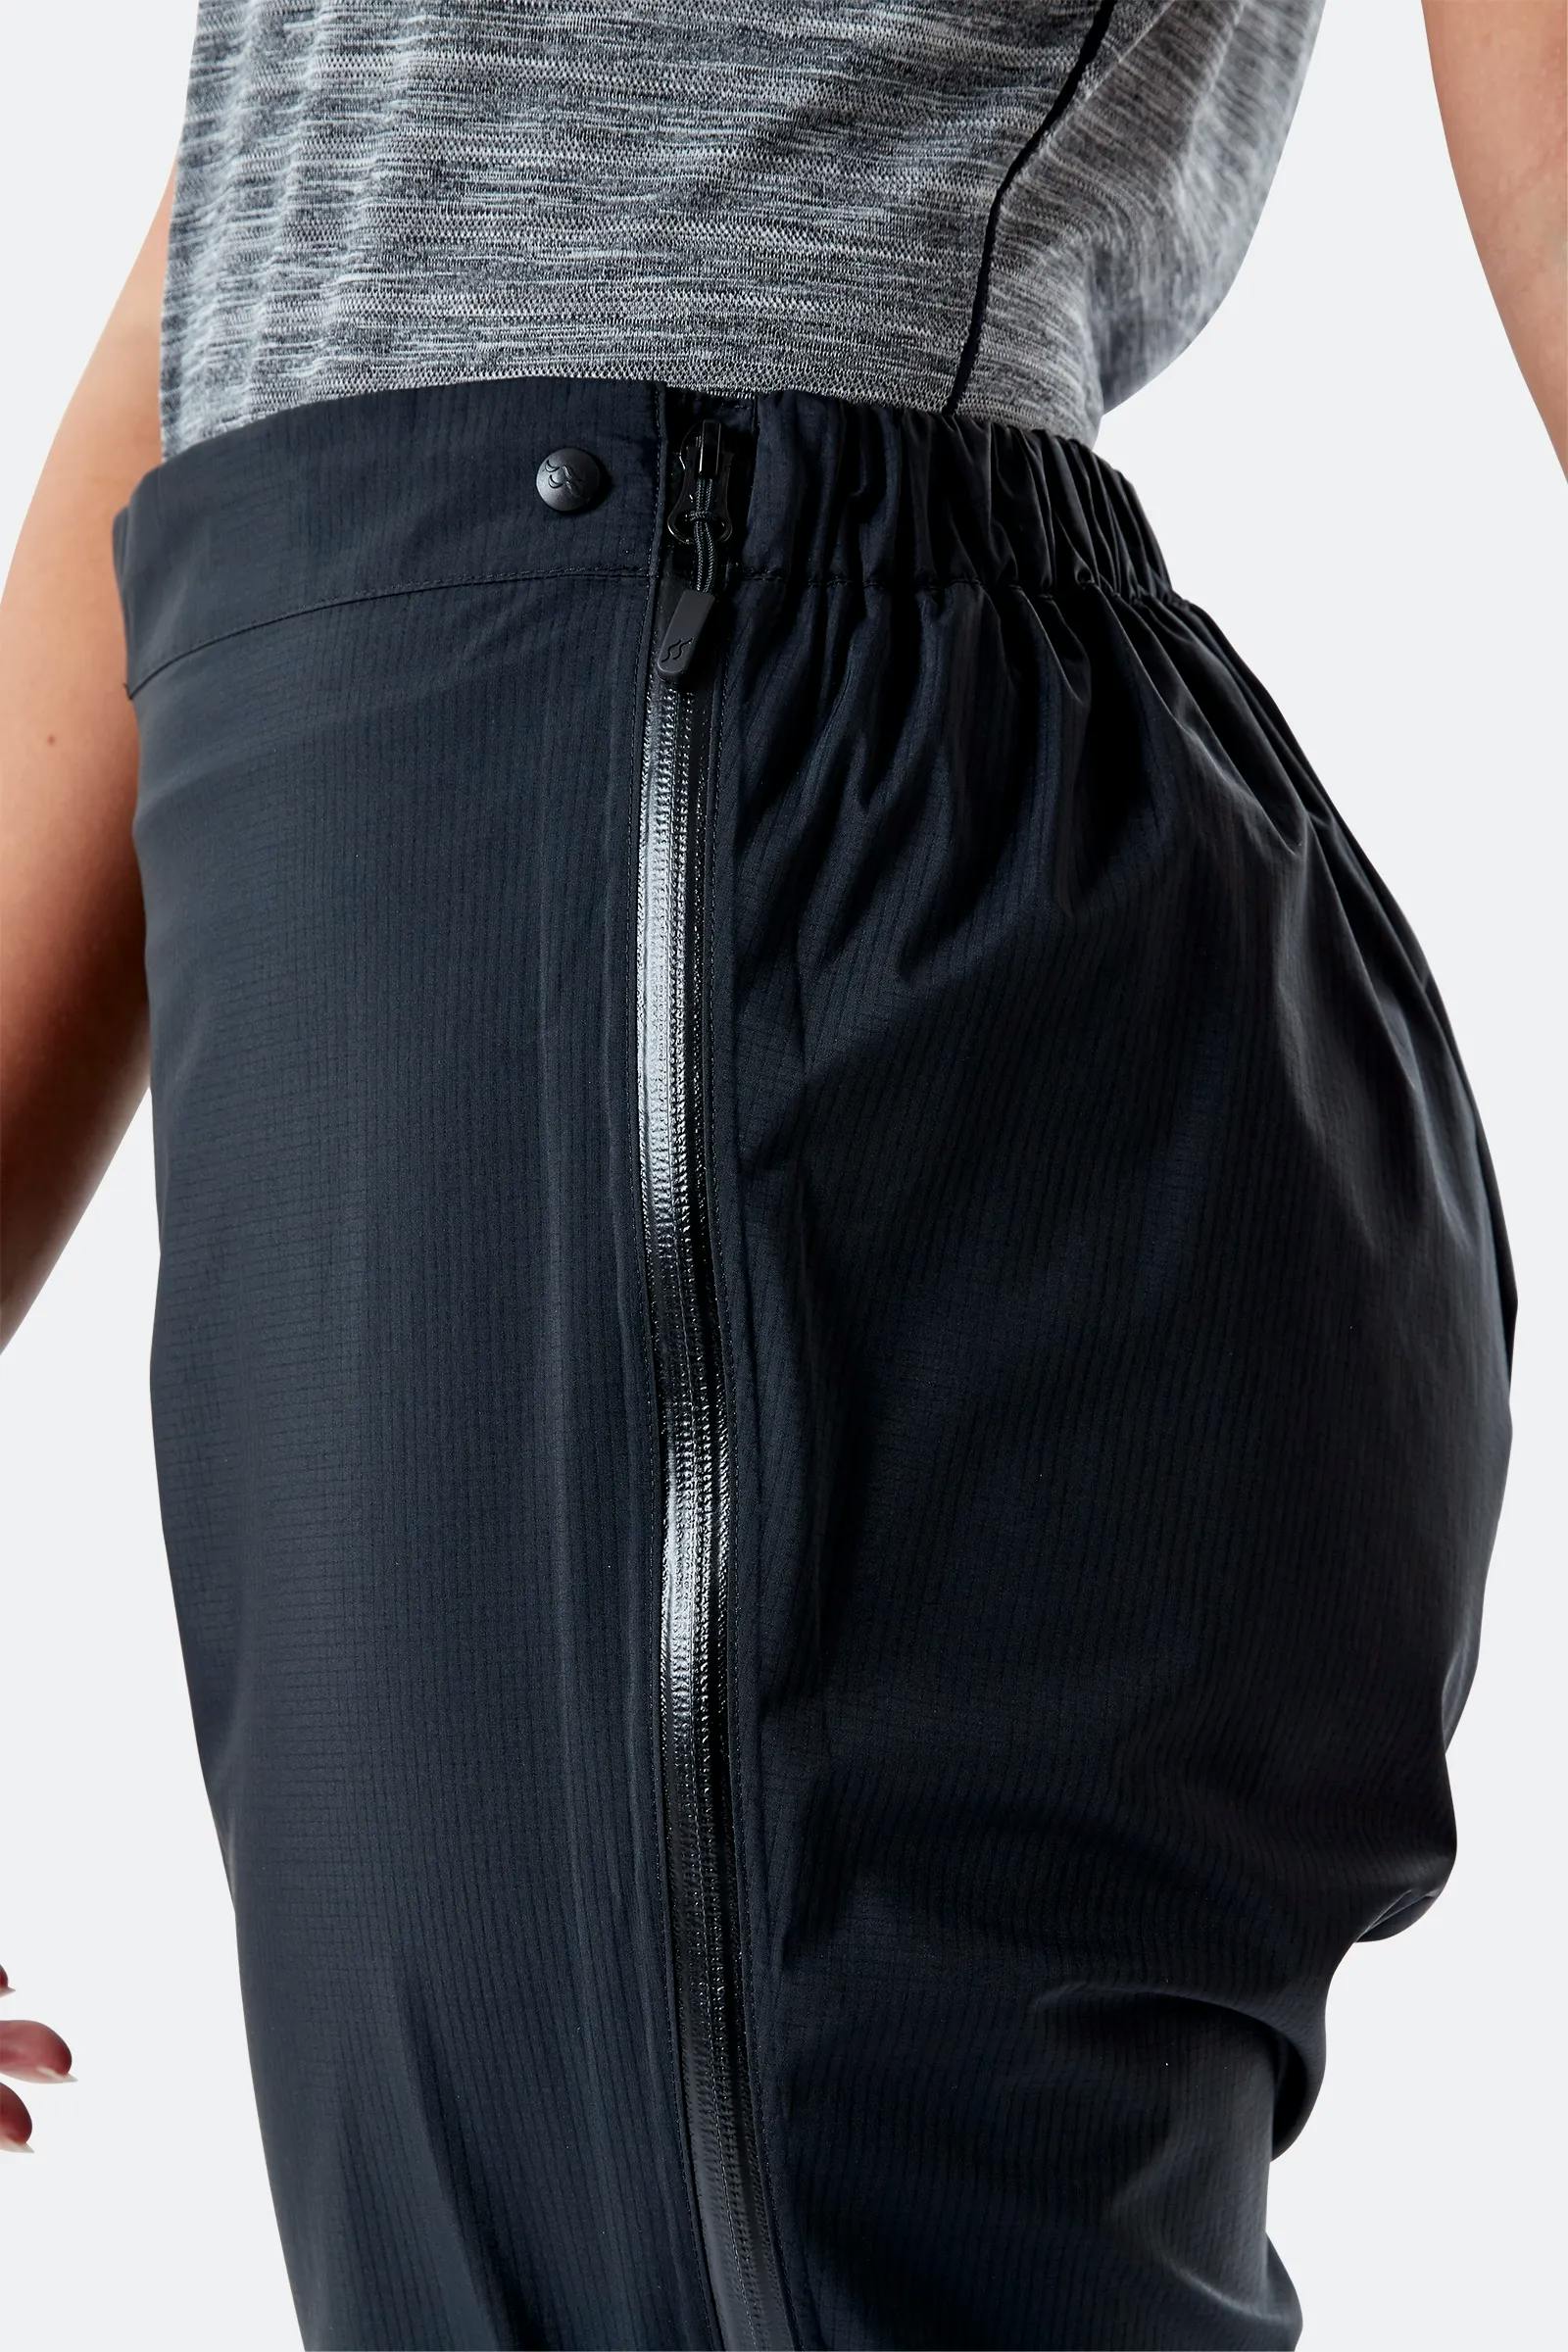 Rab Women's Downpour Plus 2.0 Pants